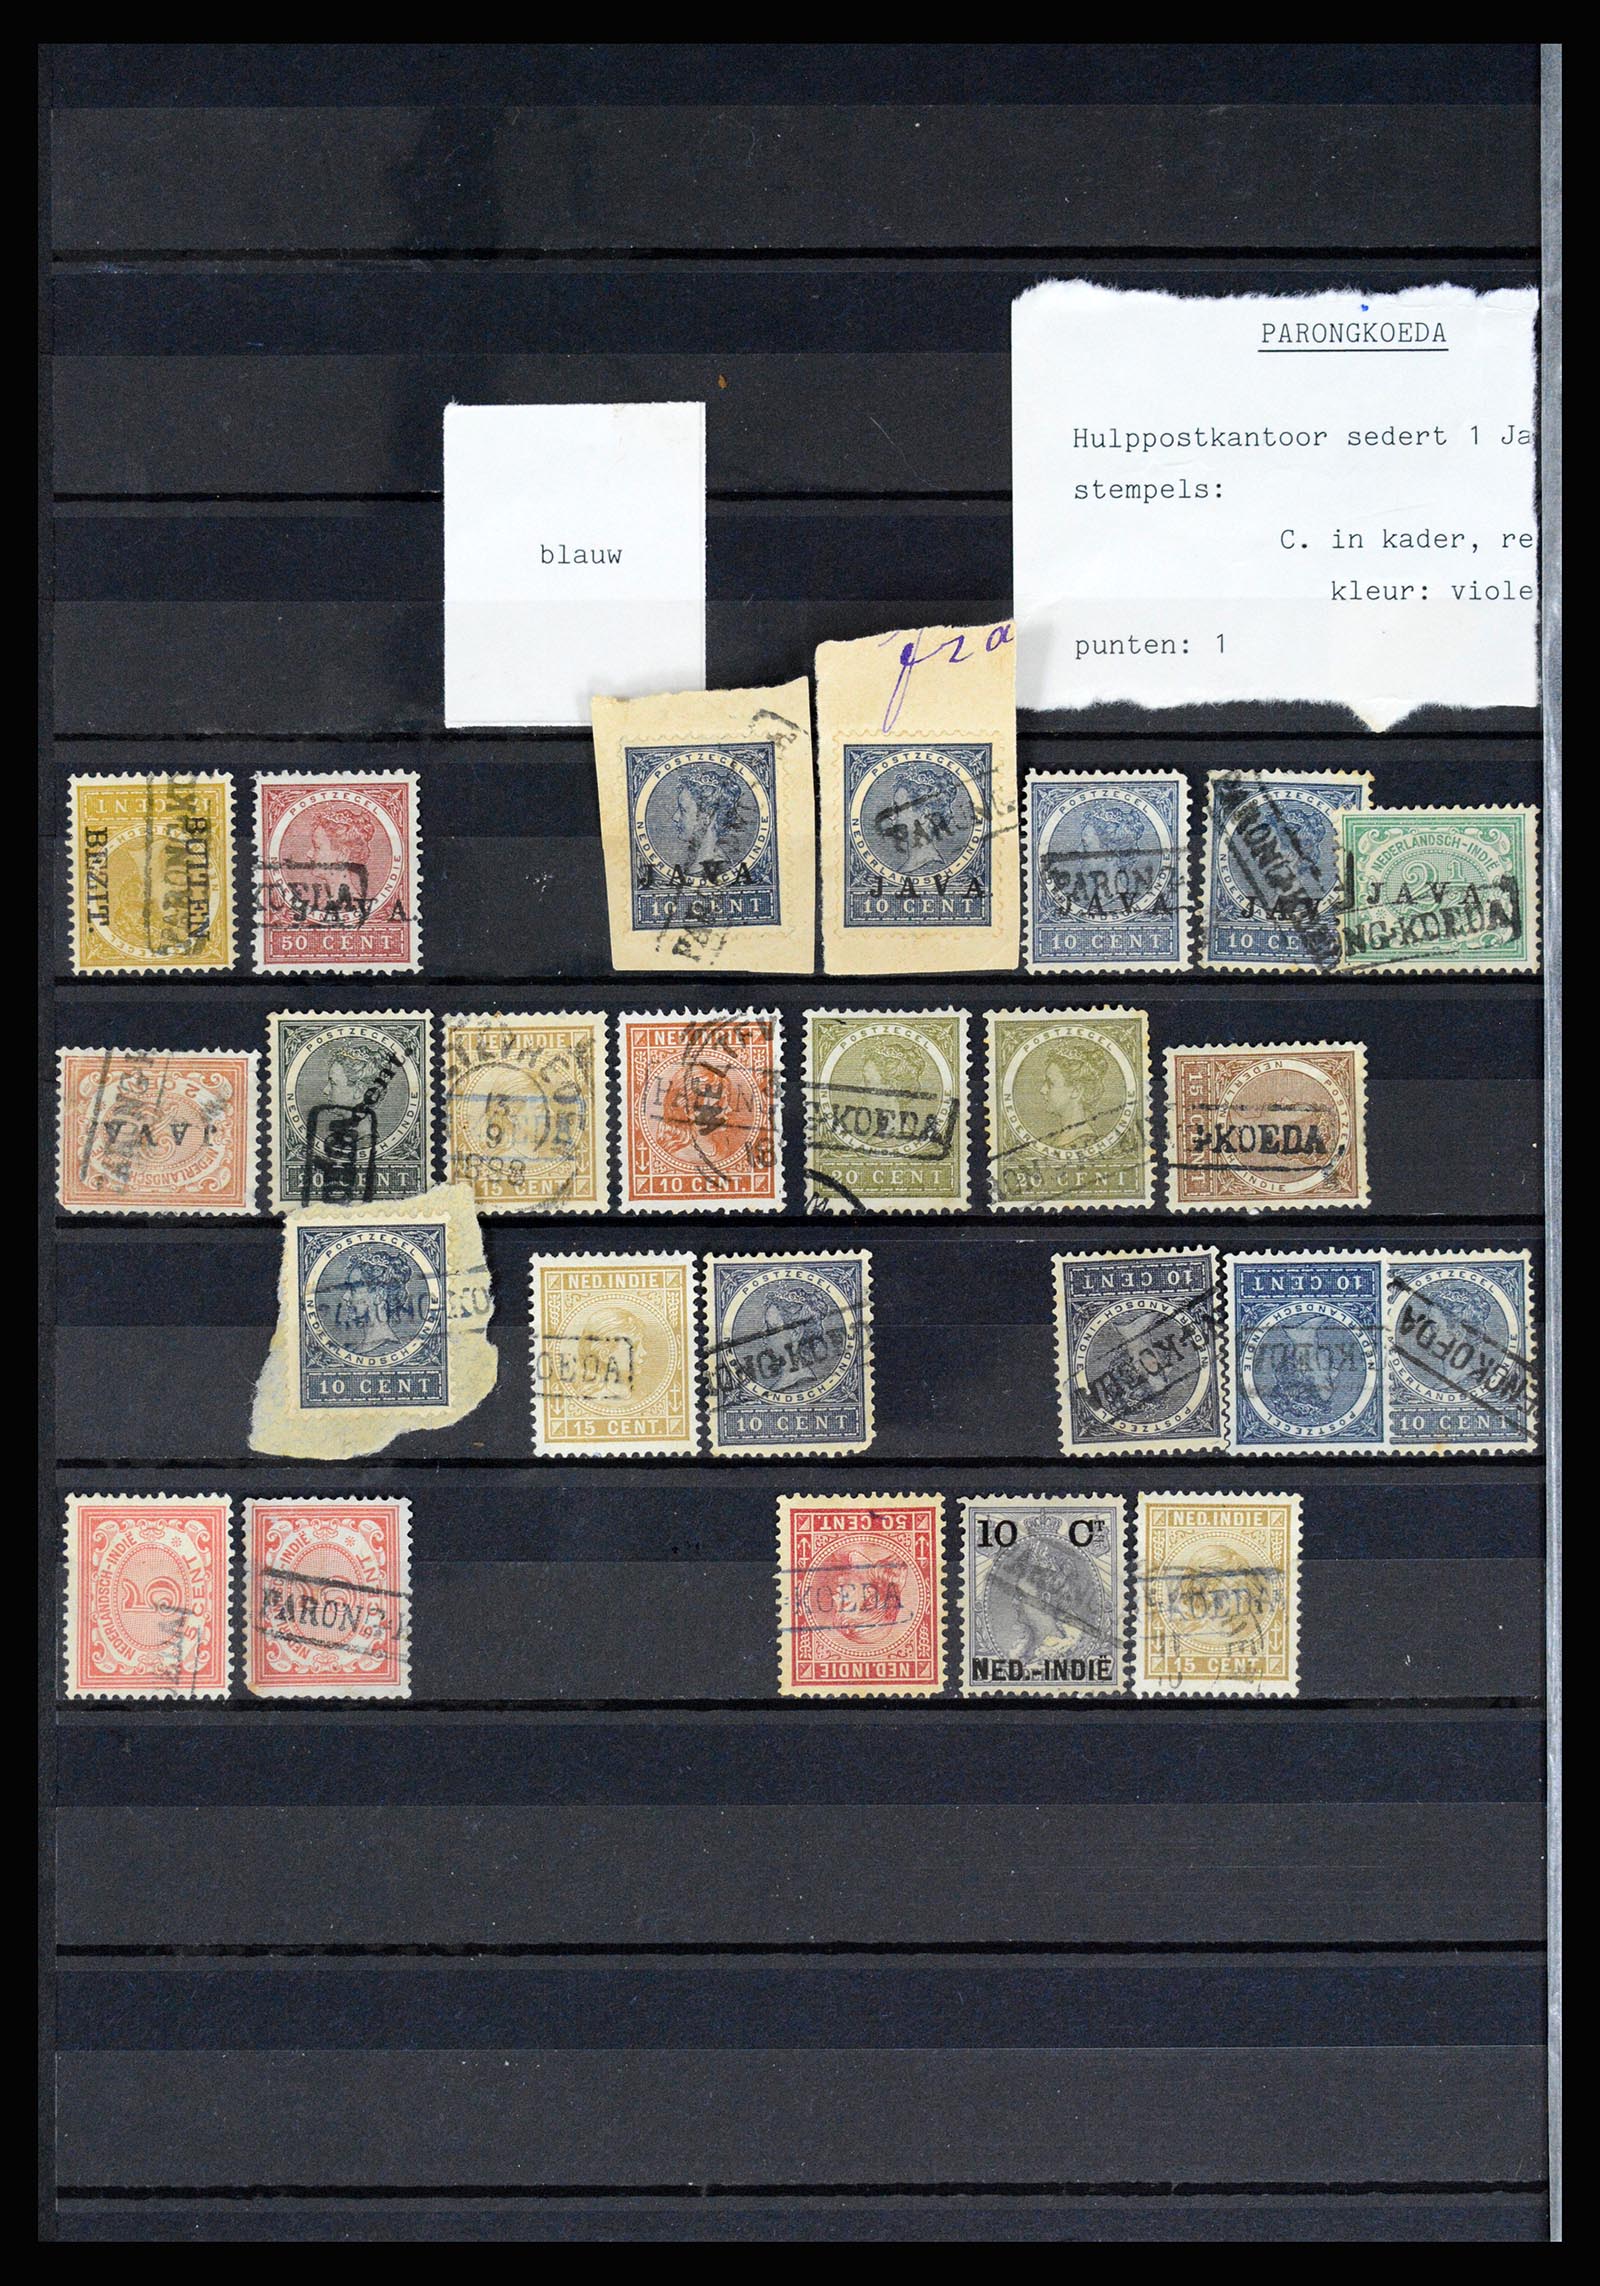 36512 054 - Stamp collection 36512 Nederlands Indië stempels 1872-1930.